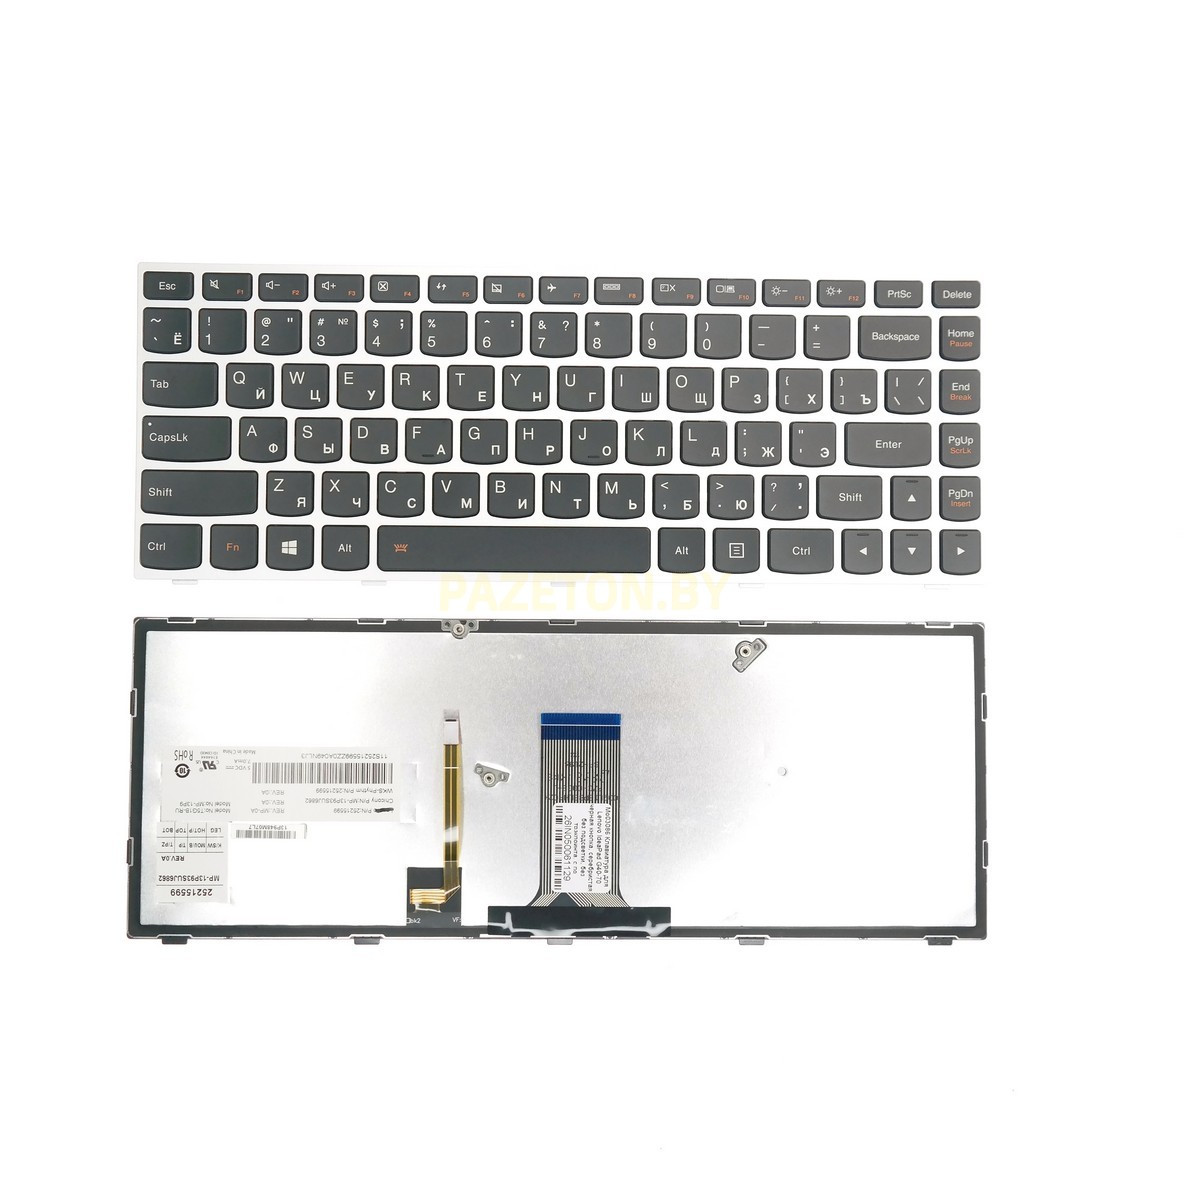 Клавиатура для ноутбука Lenovo IdeaPad G40-70 черные кнопки, серебристая рамка, с подсветкой